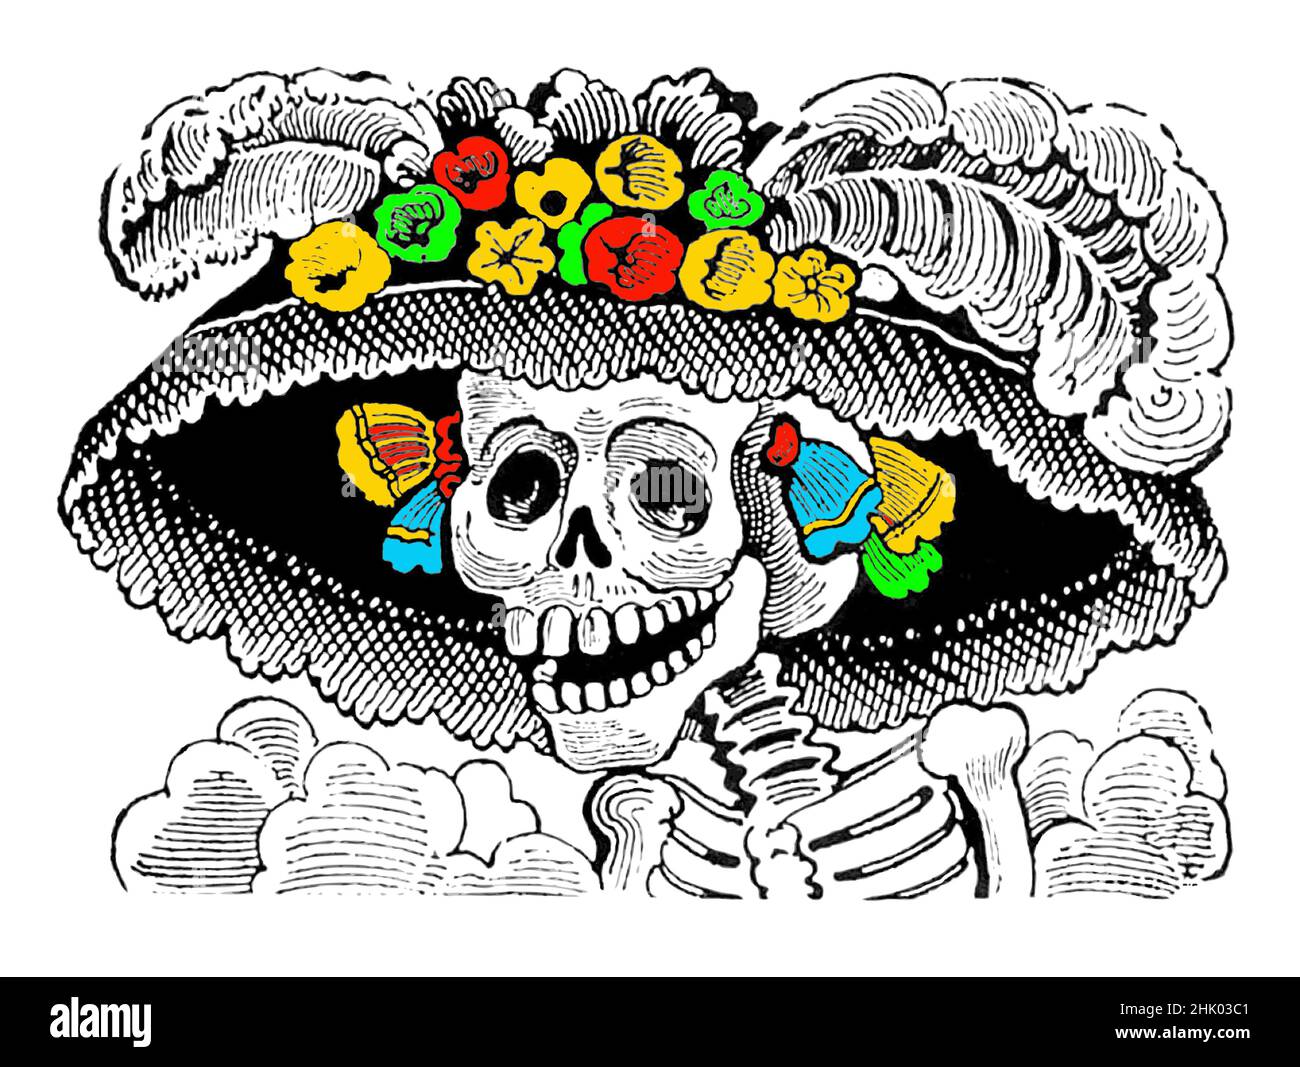 La Calavera Catrina Klassiker Tag der Toten Illustration. Farbe mit hellen mexikanischen Festa-Farben. Stock Vektor